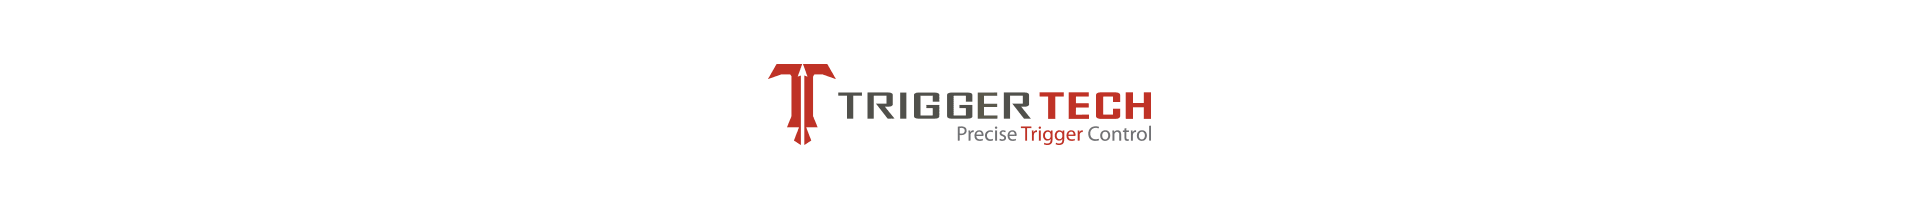 Retrouvez les détentes TriggerTech sur www.tactirshop.fr